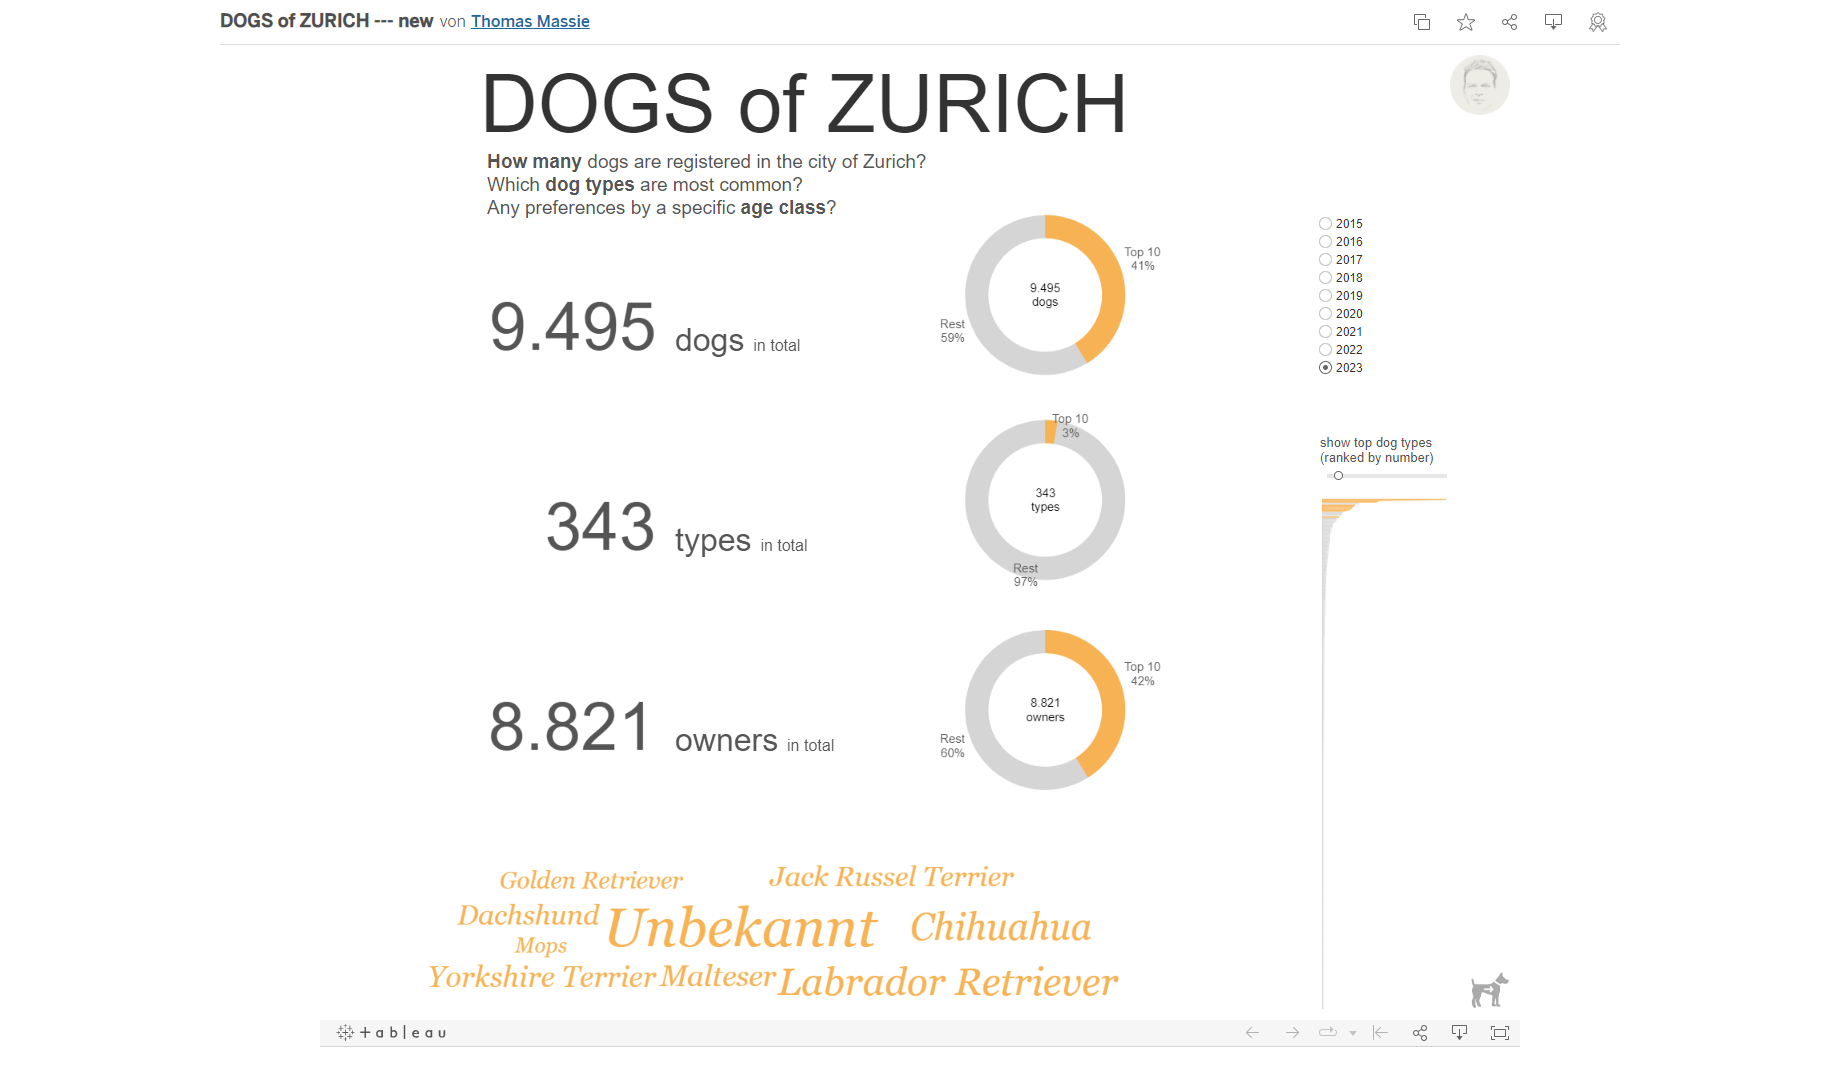 Dogs of Zurich